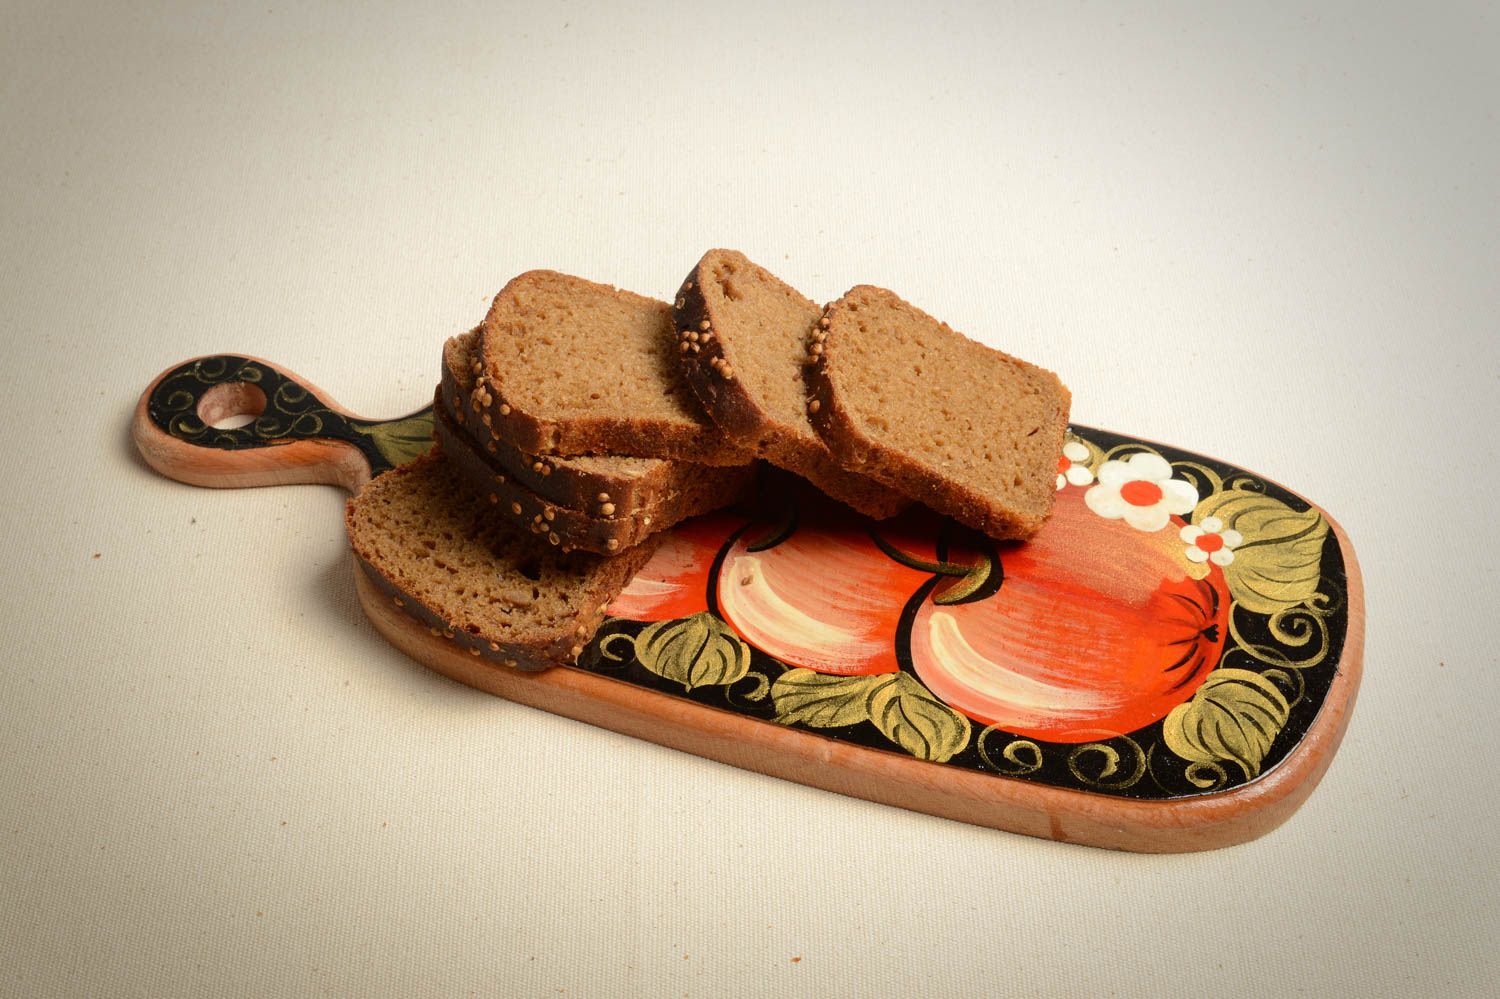 Tabla de madera para cortar artesanal menaje de cocina regalo original Manzanas foto 1